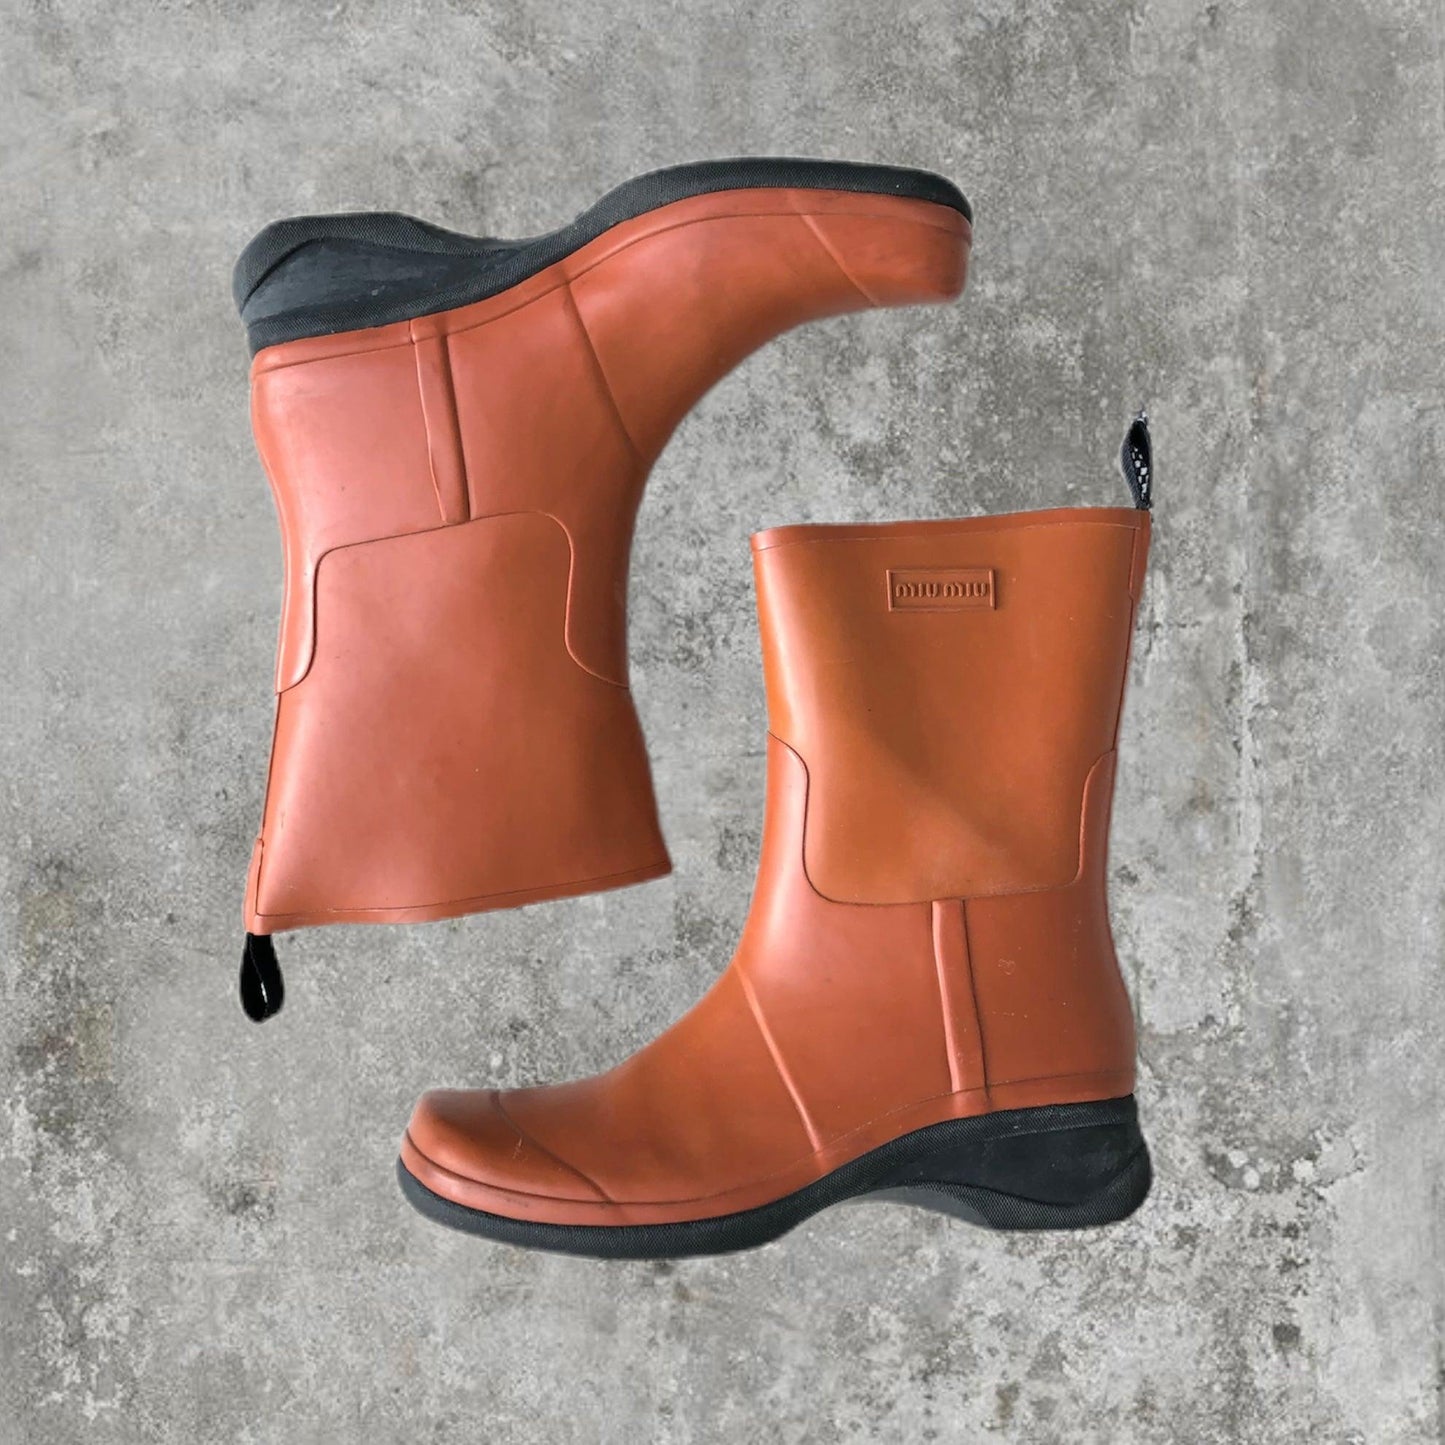 Miu Miu Rain Boots - Size 8 - Known Source